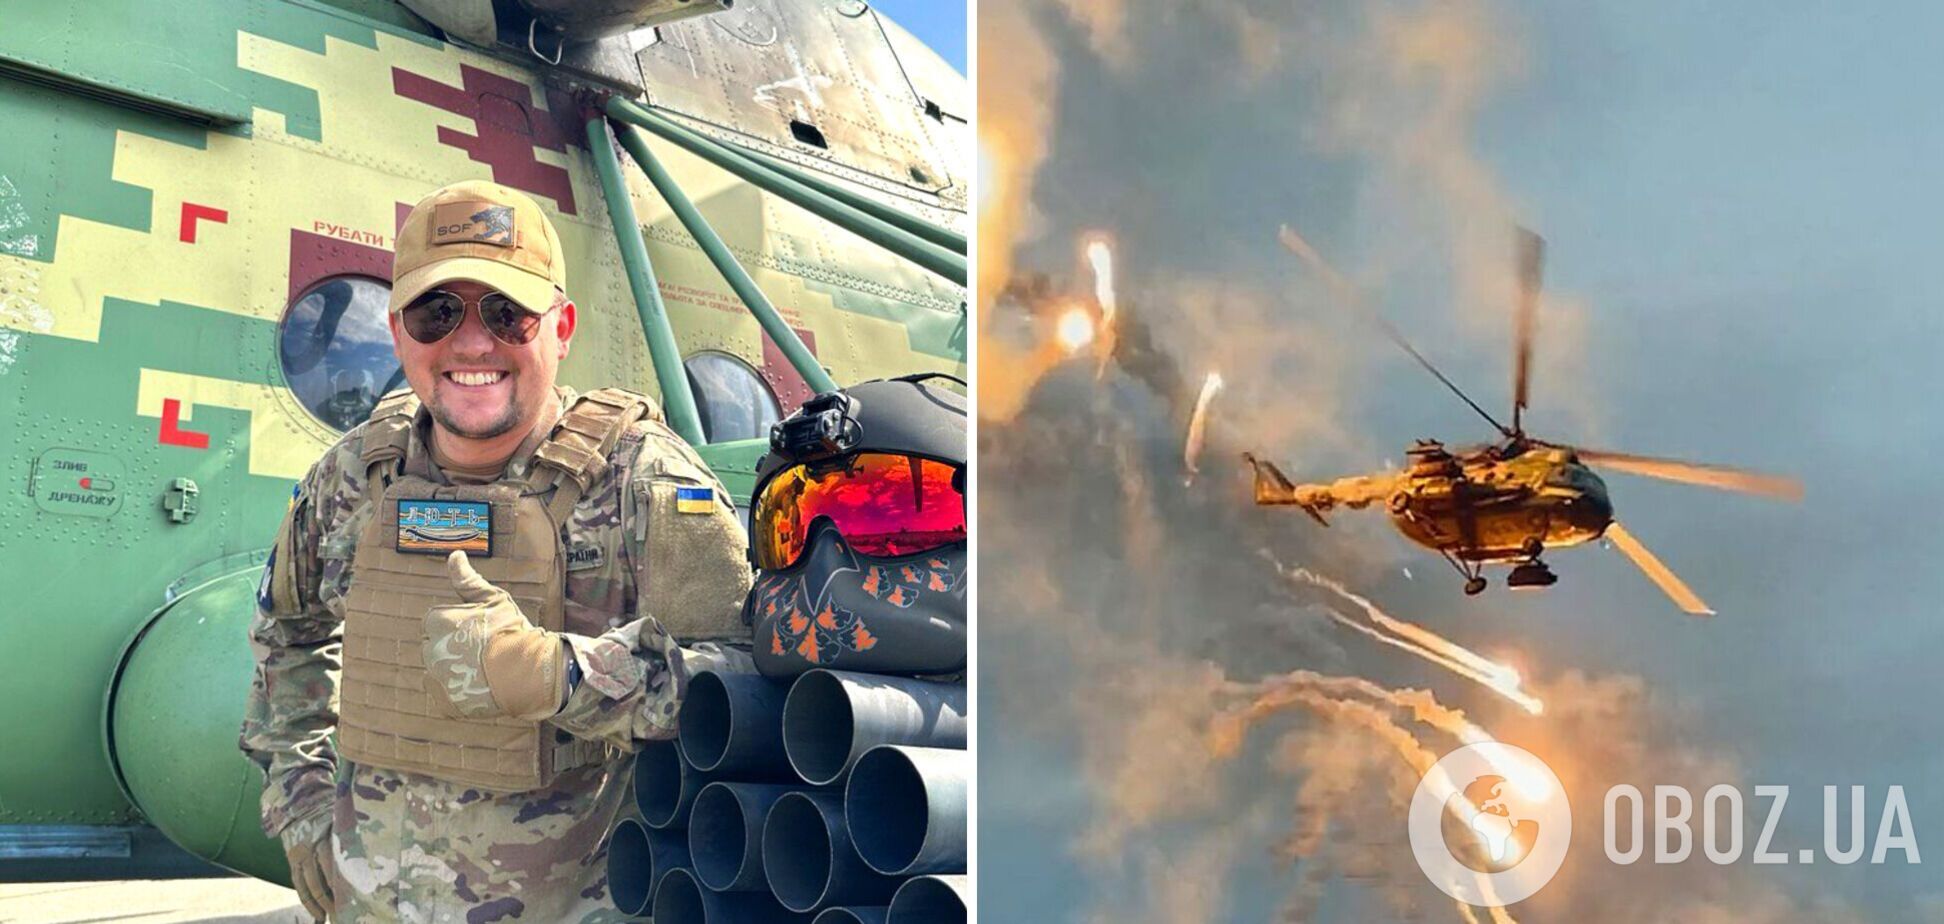 'Меньше секунды на принятие решения': пилот вертолета Ми-8 рассказал, как воюет на передовой. Фото